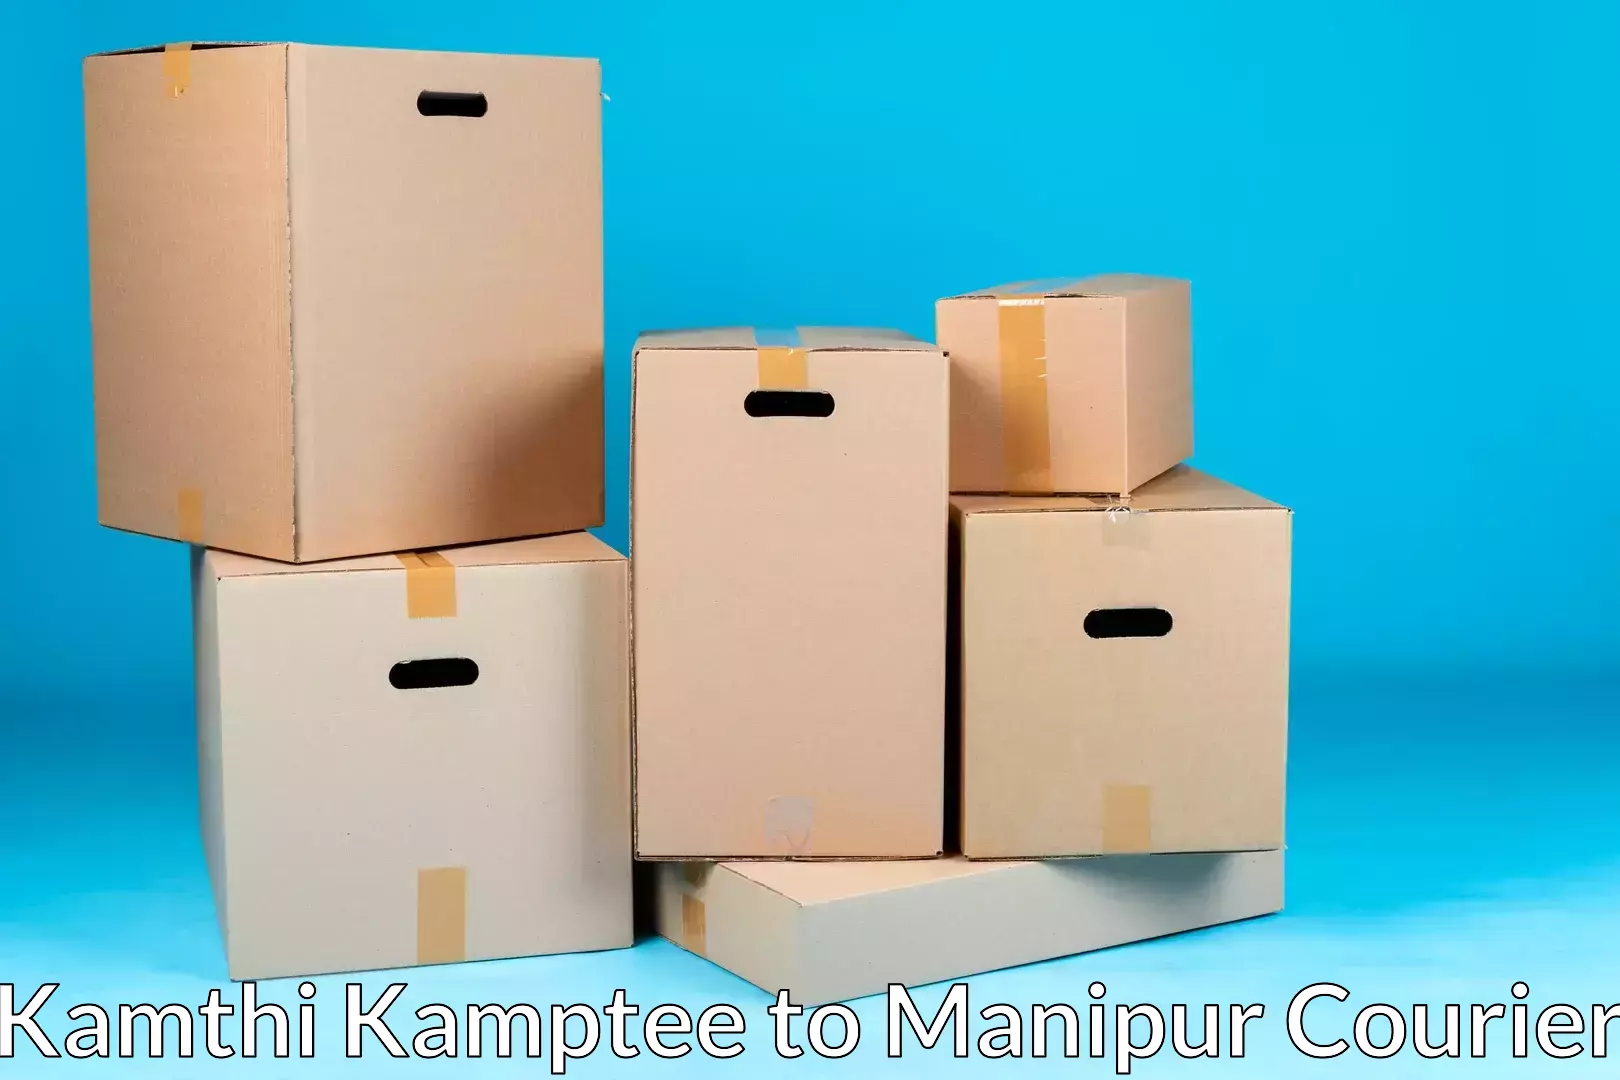 Home goods moving Kamthi Kamptee to Moirang